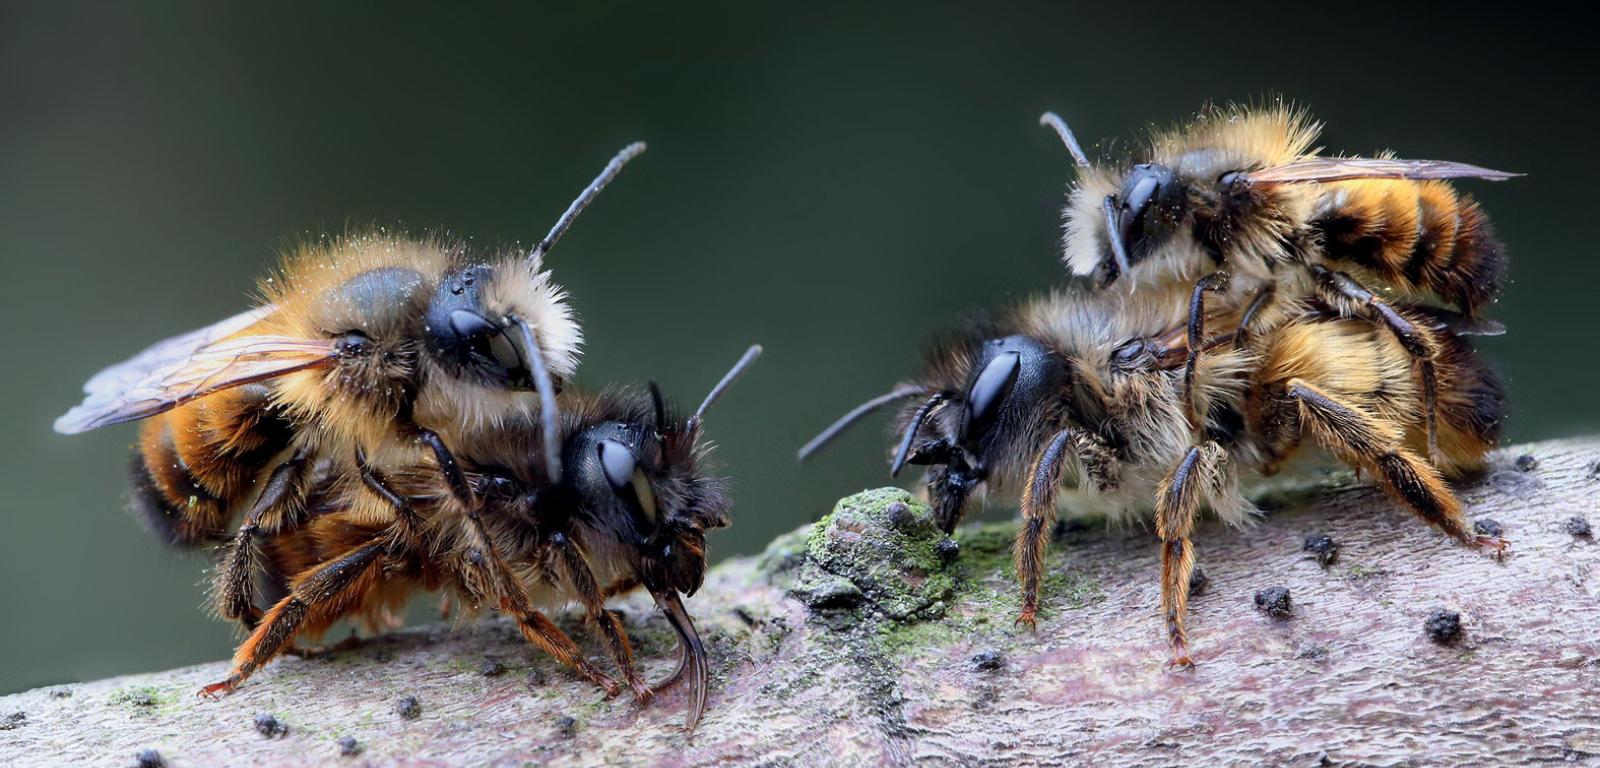 Pszczoły murarki prowadzą samotniczy tryb życia. Samce wychodzą z ­zimowisk pierwsze. Kiedy pojawia się nowa samica, rzuca się na nią tabun samców.